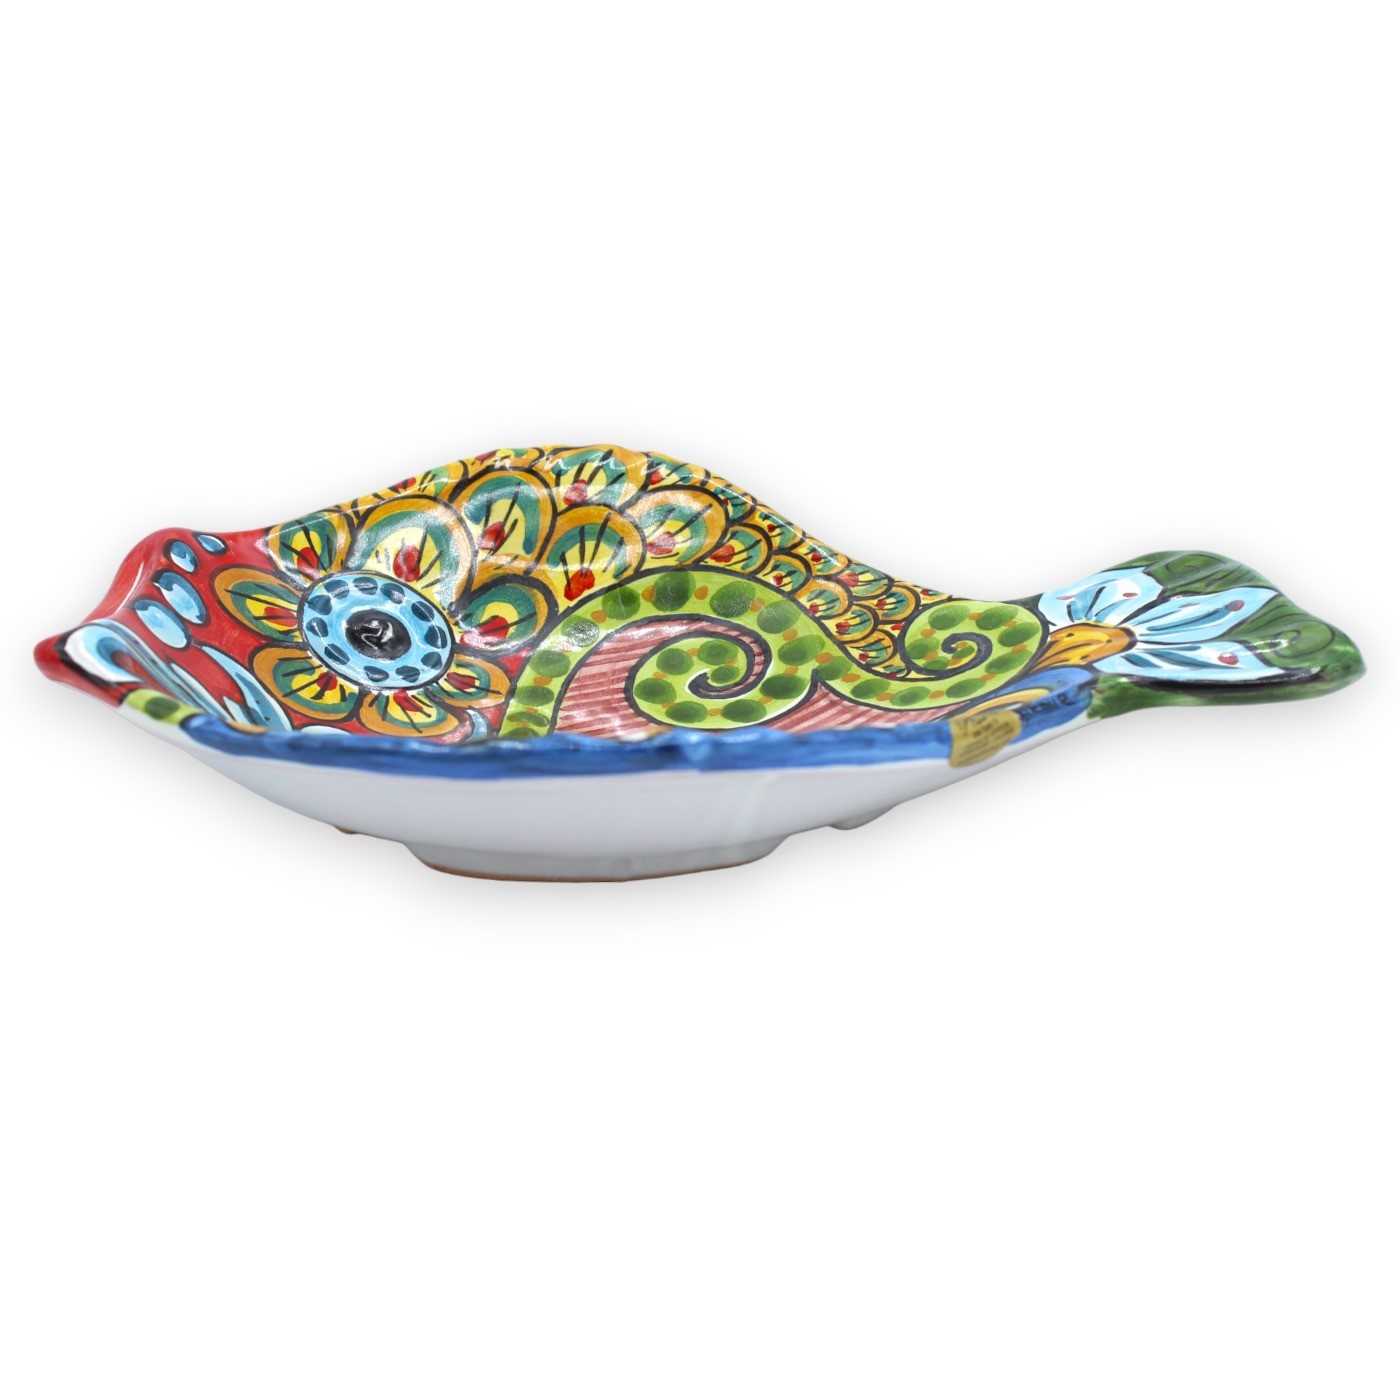 Vassoio piatto da portata forma di Pesce (1 Pz) in ceramica siciliana -  vari decori, misure 25x20 cm